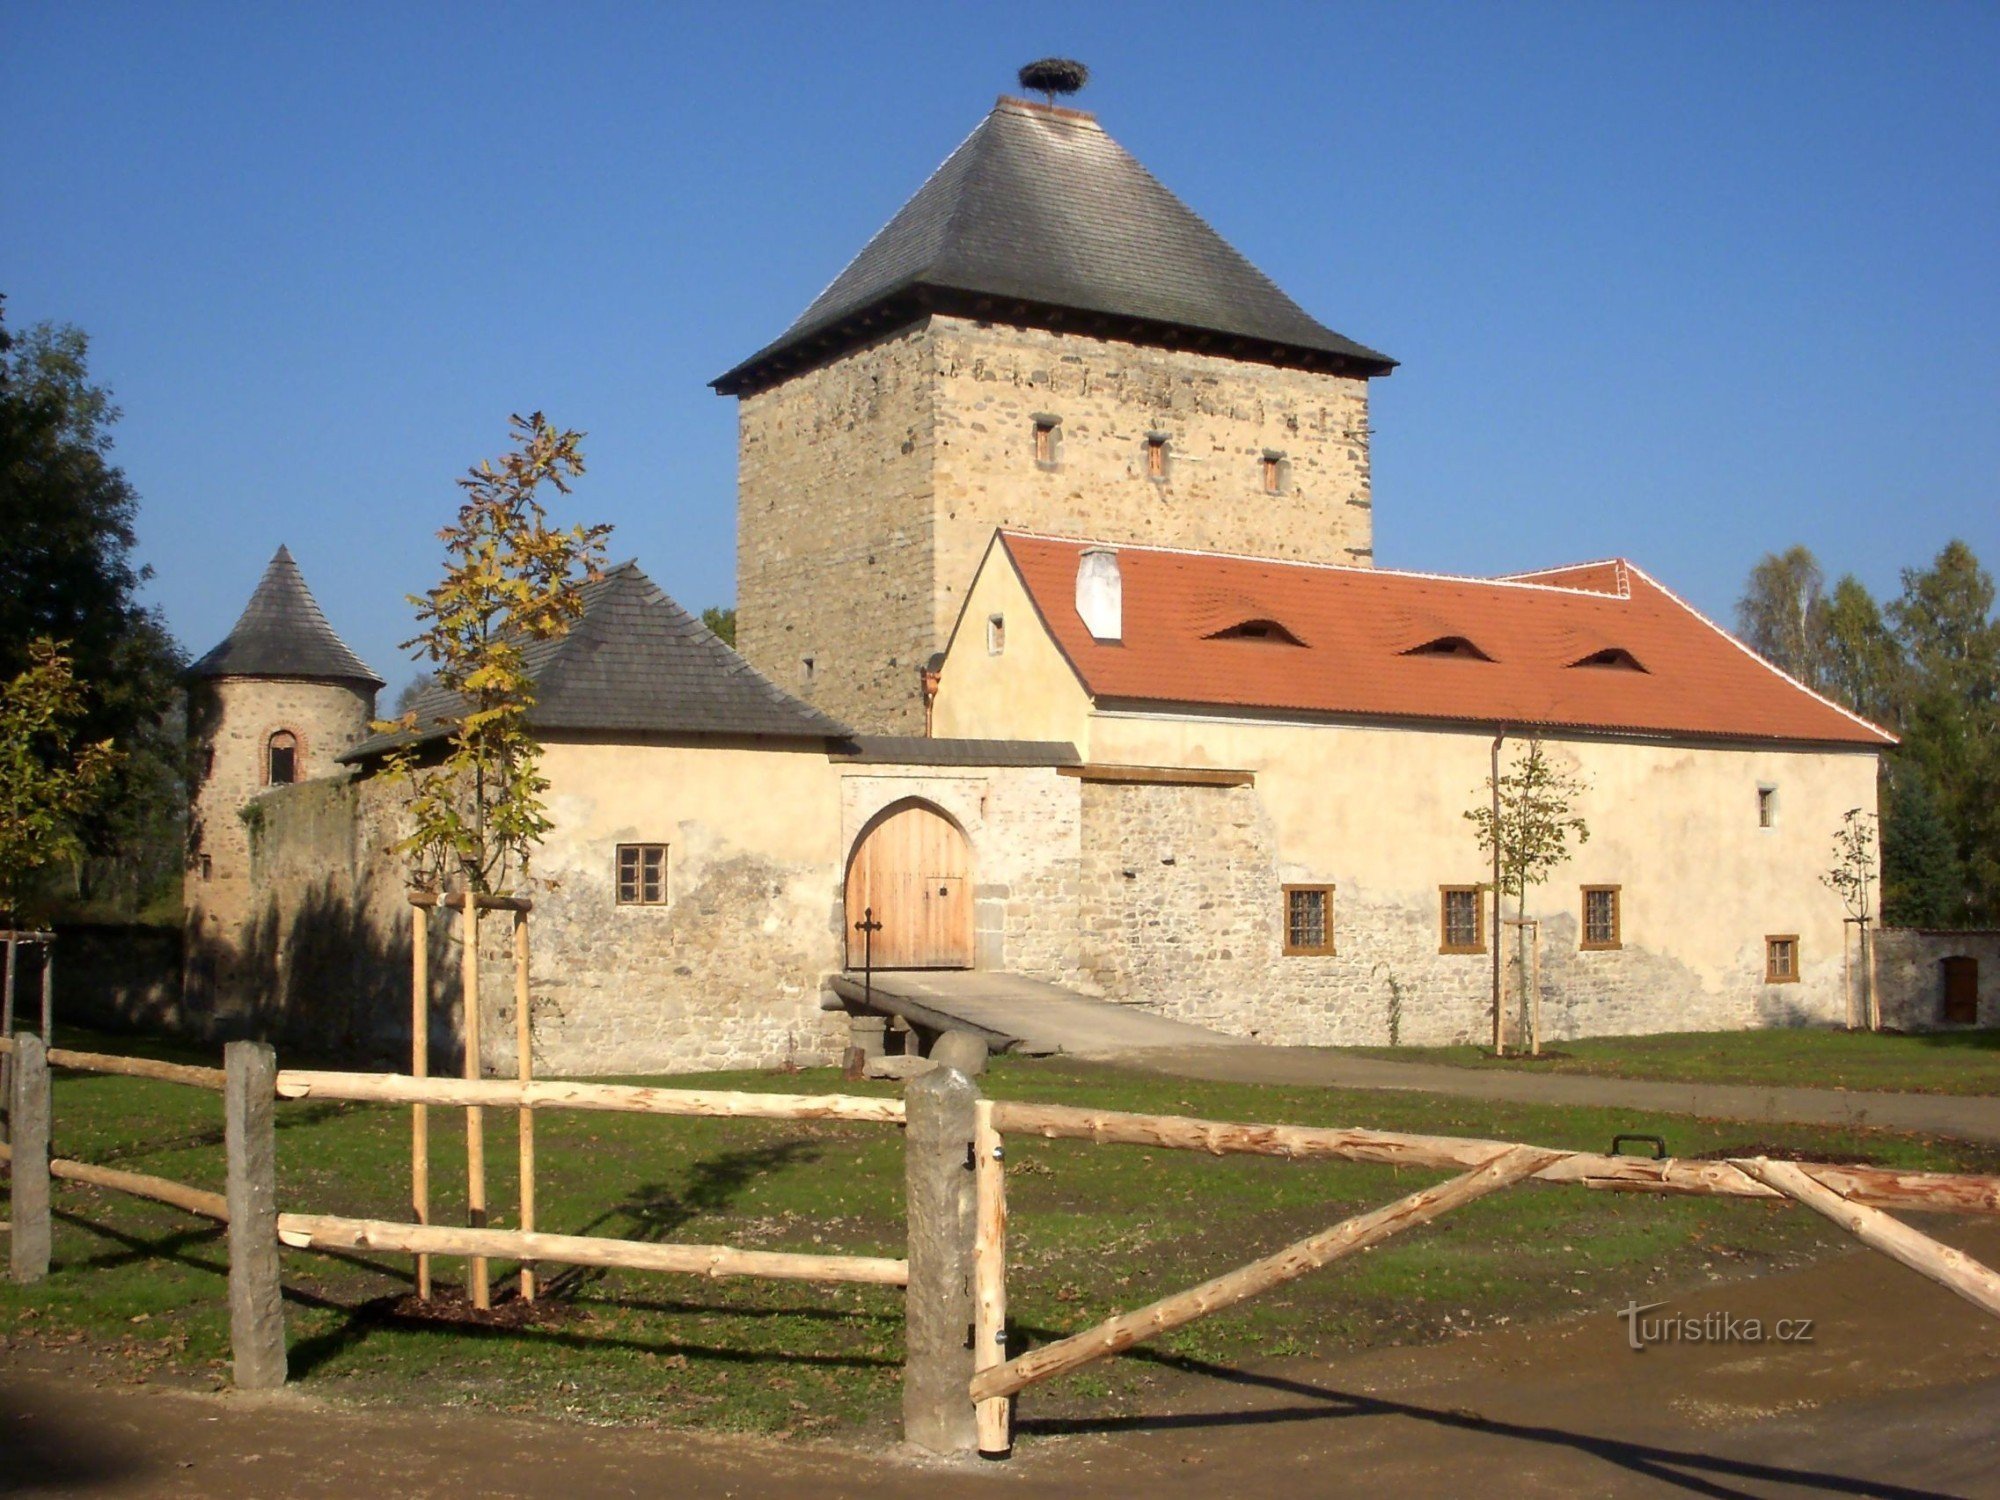 Kestřany - Pháo đài phía dưới